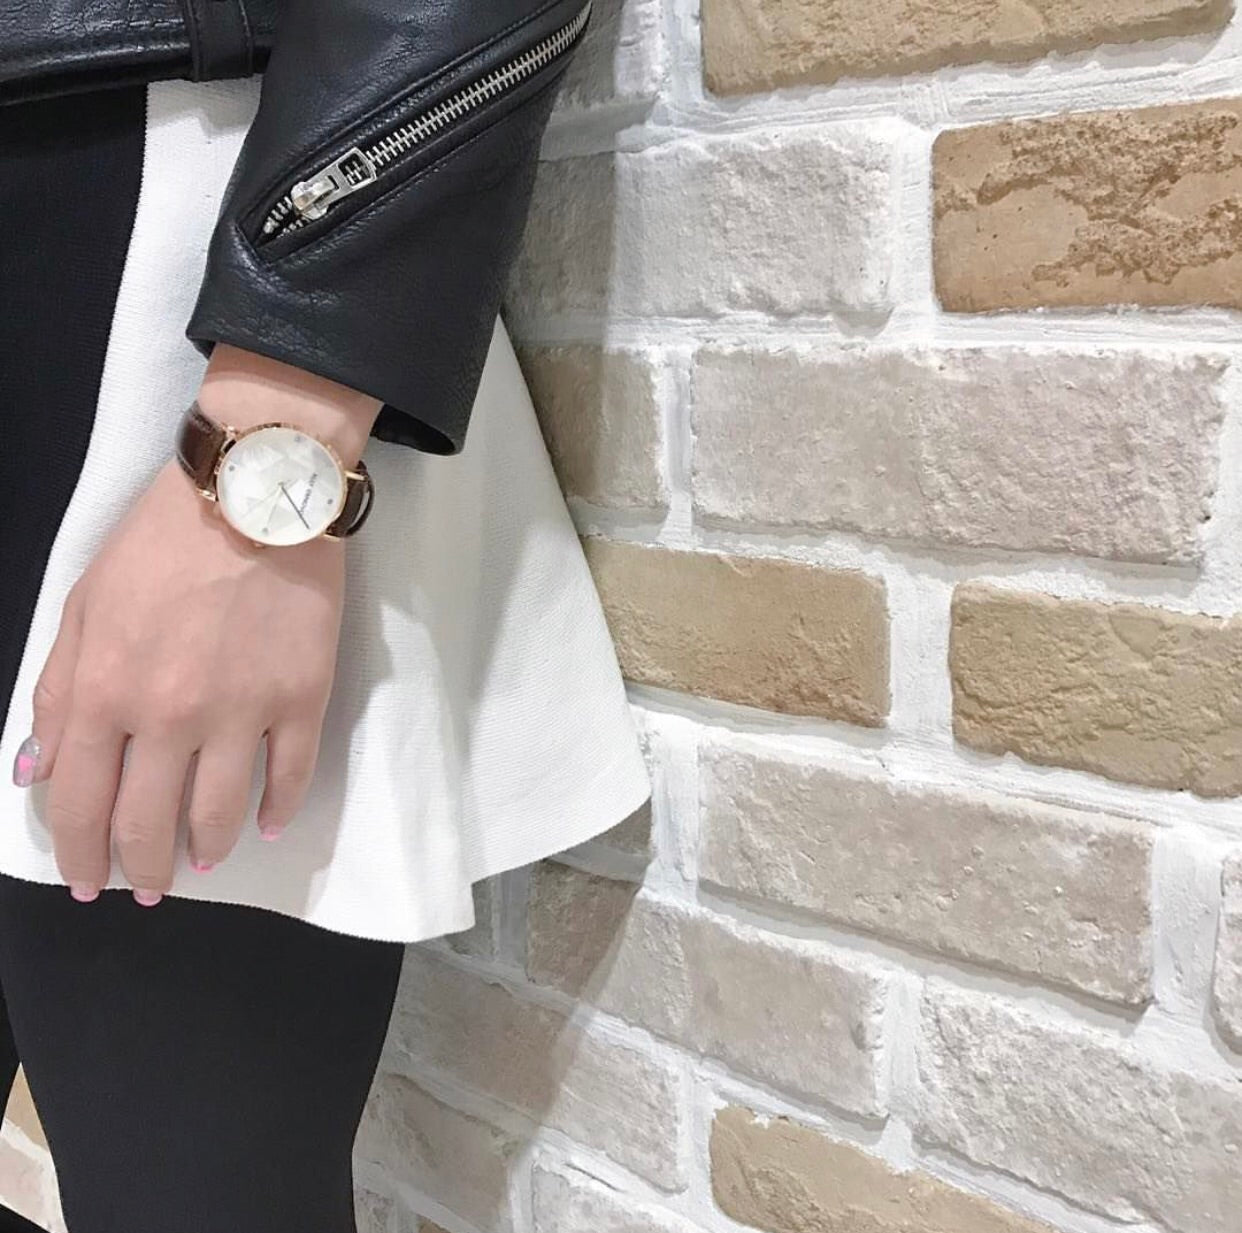 Gaia pearl皮革腕錶-白色菱形琉璃玫瑰金框咖啡色真皮錶帶 AF5003.2